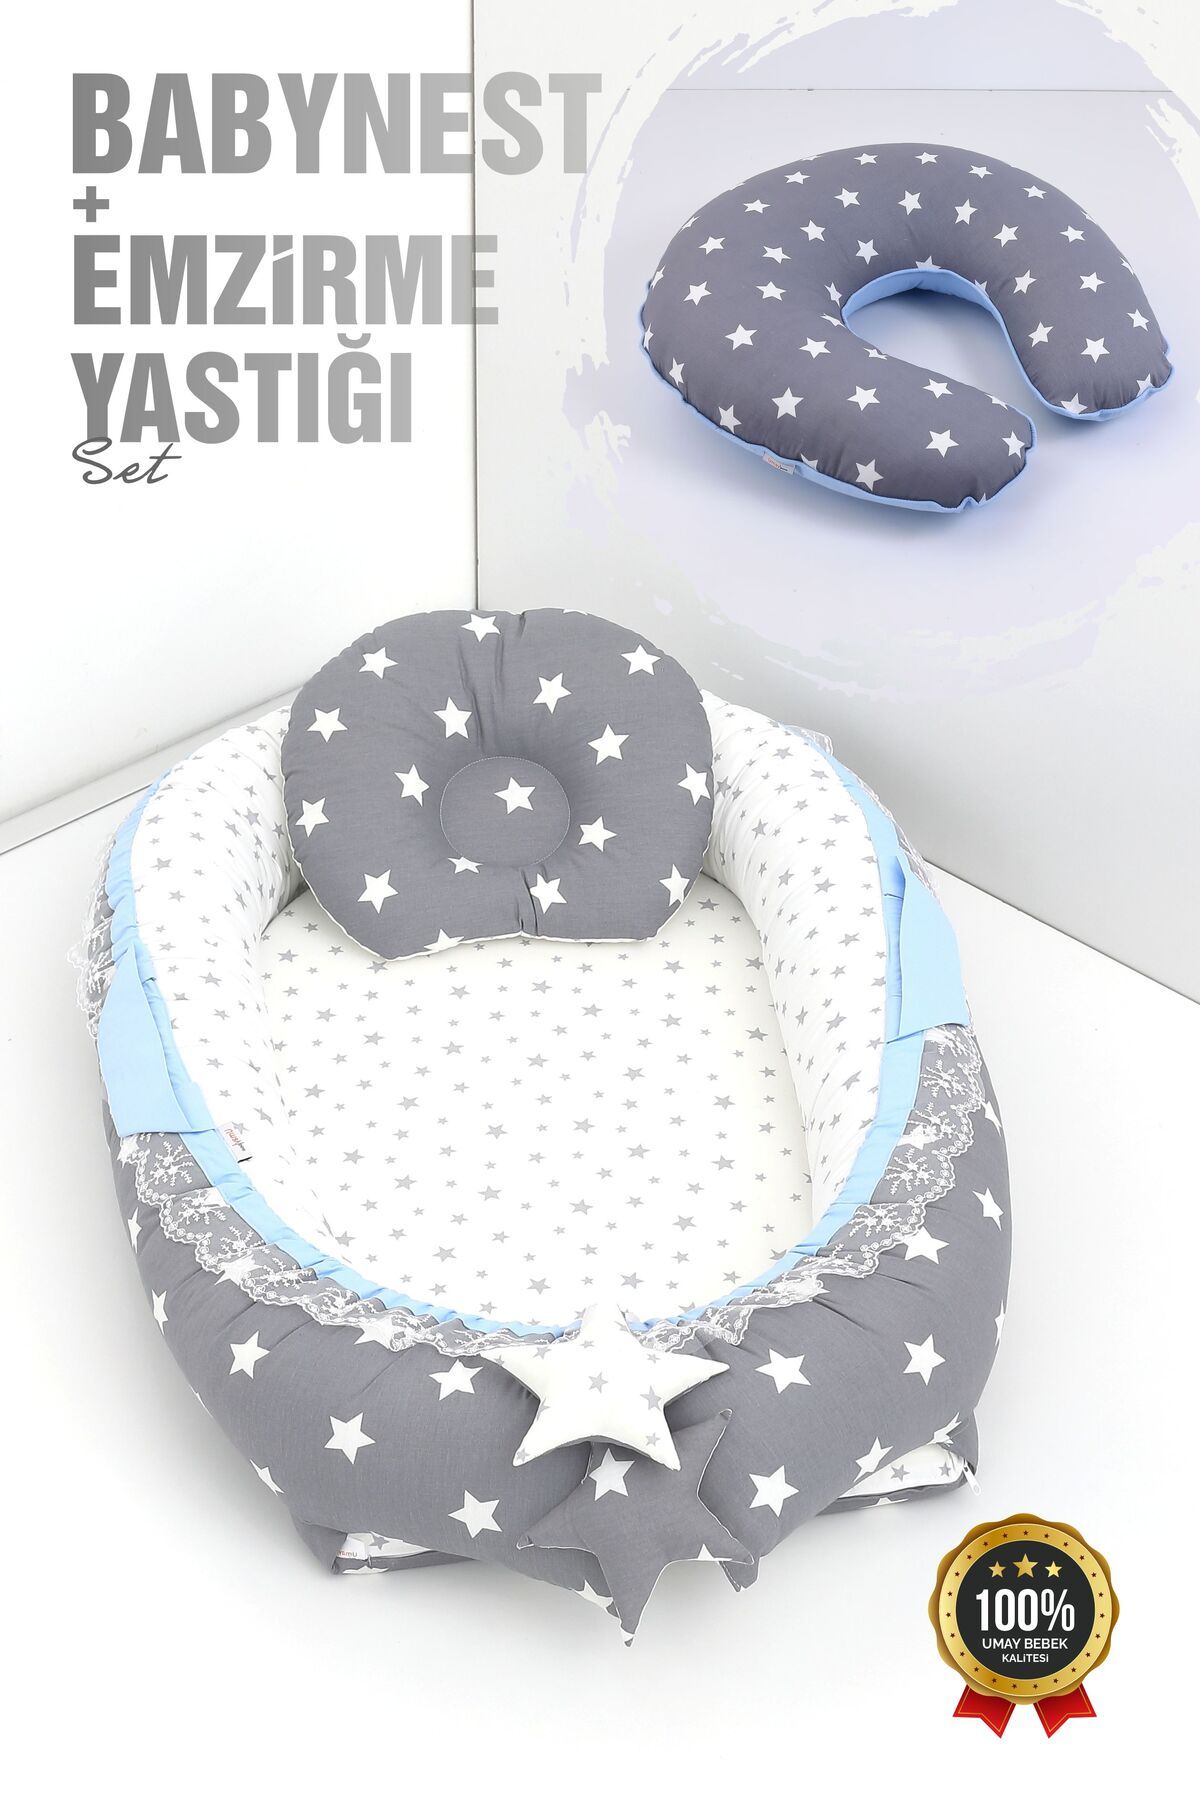 Umaybebek Babynest, Bebek Uyku Yatağı 0-2 Yaş + Emzirme Yastığı 60x60 cm